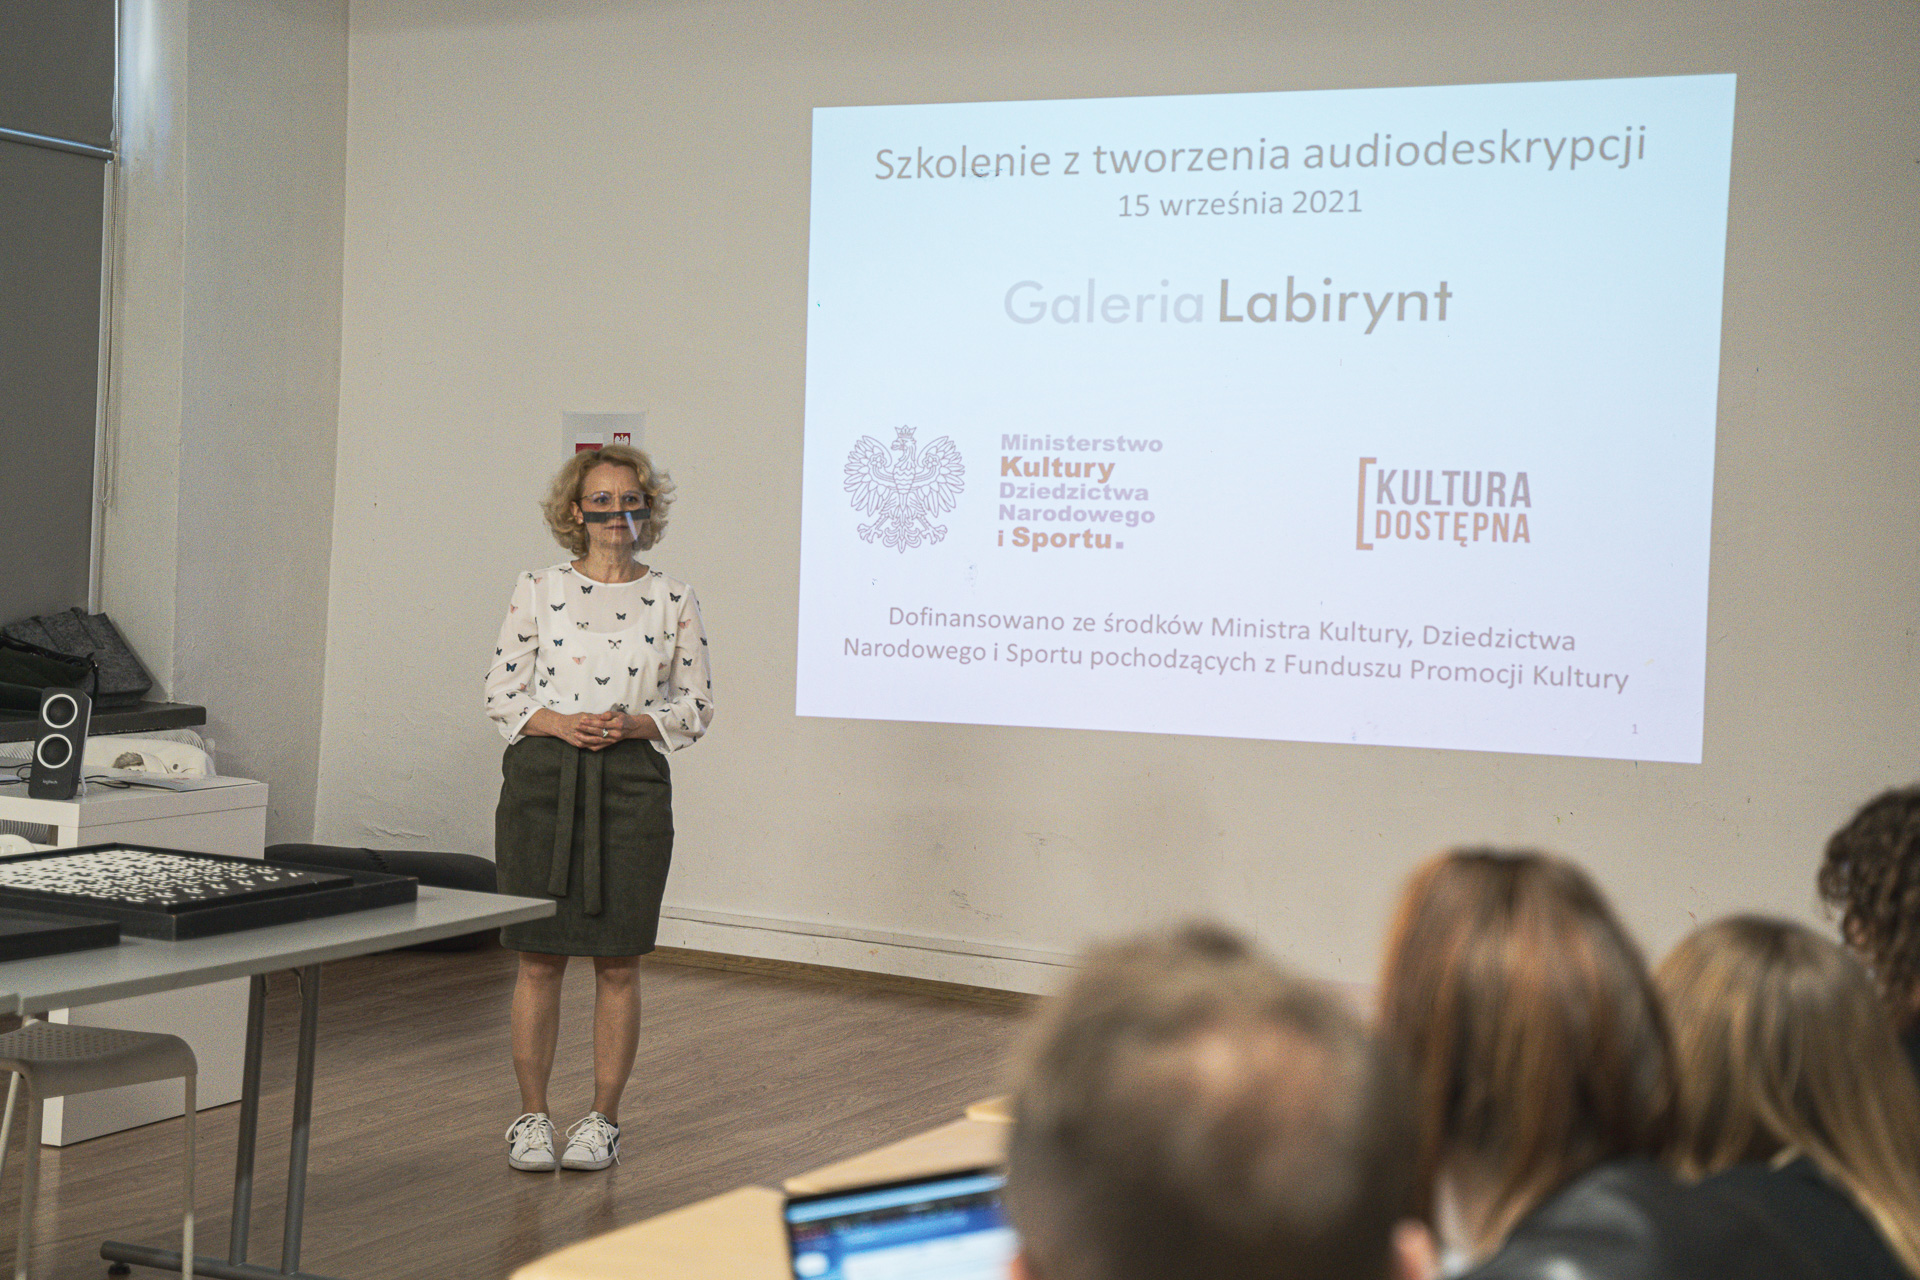 Szkolenie z pisania audiodeskrypcji, prowadzenie: dr Anna Sadowska, wrzesień 2021.